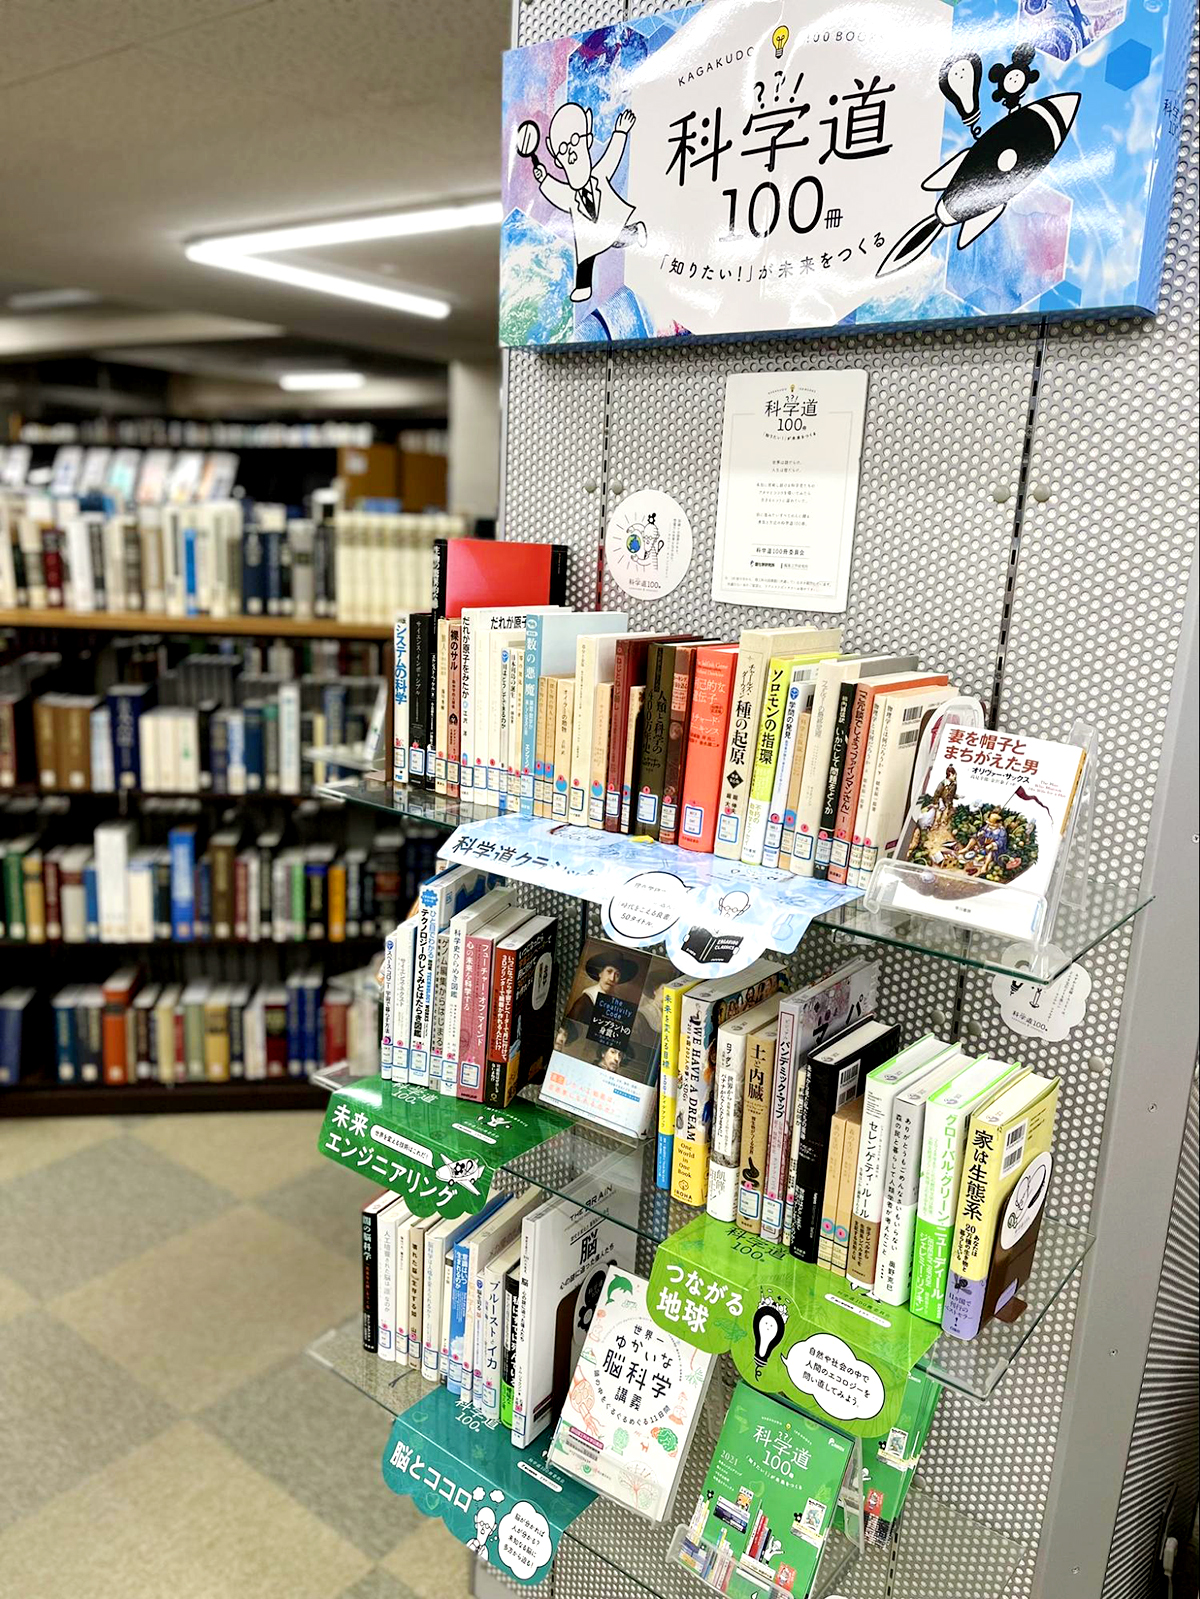 静岡理工科大学附属図書館の展示風景